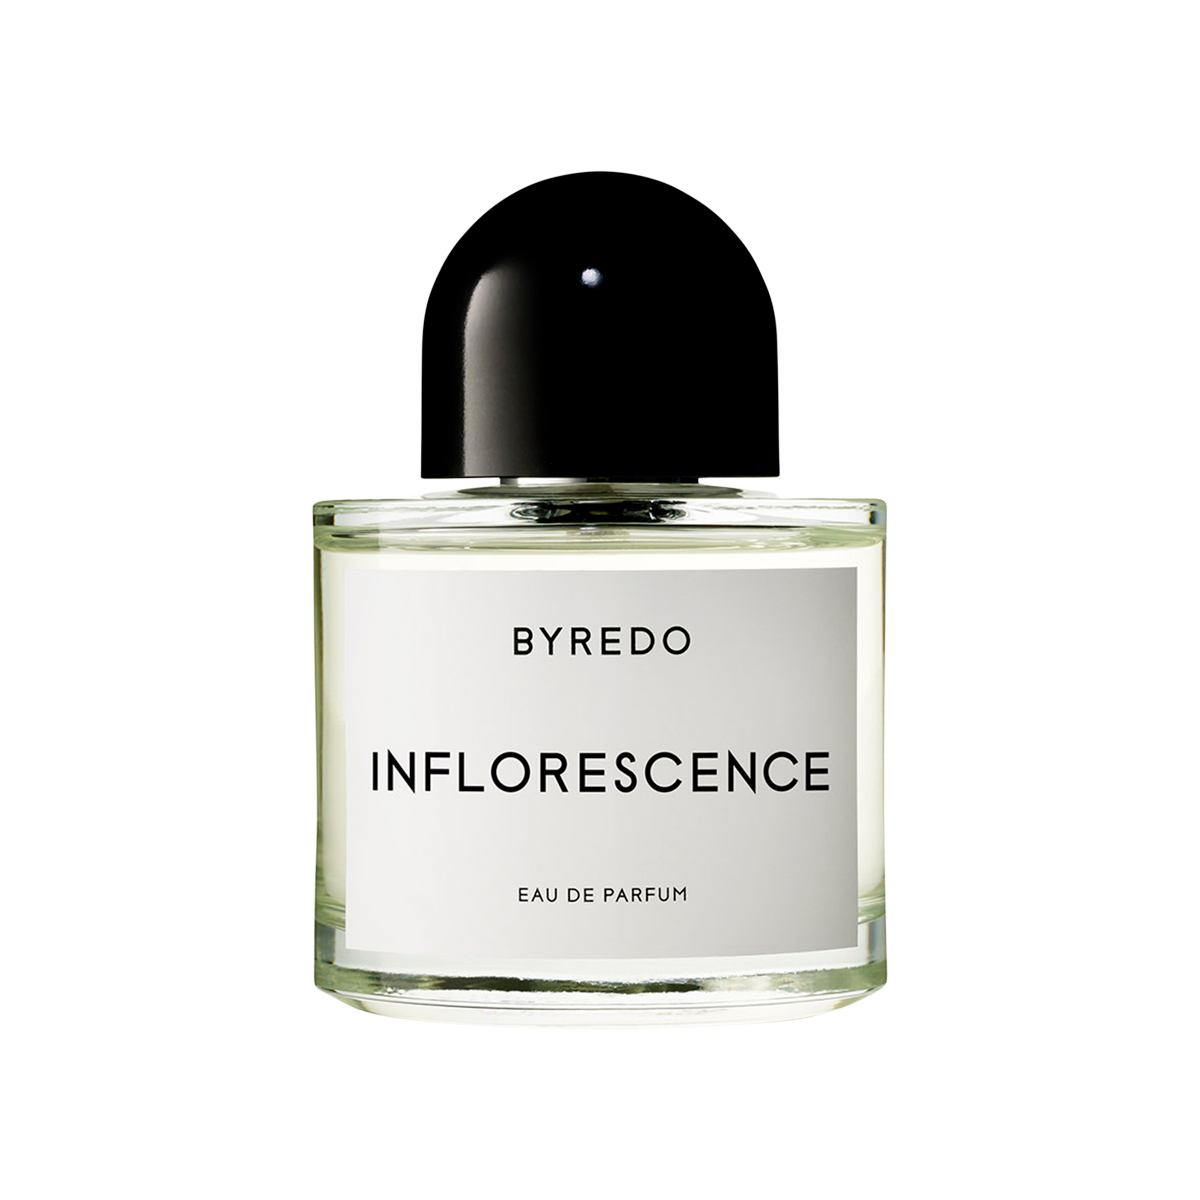 Byredo - Inflorenscence Eau de Parfum